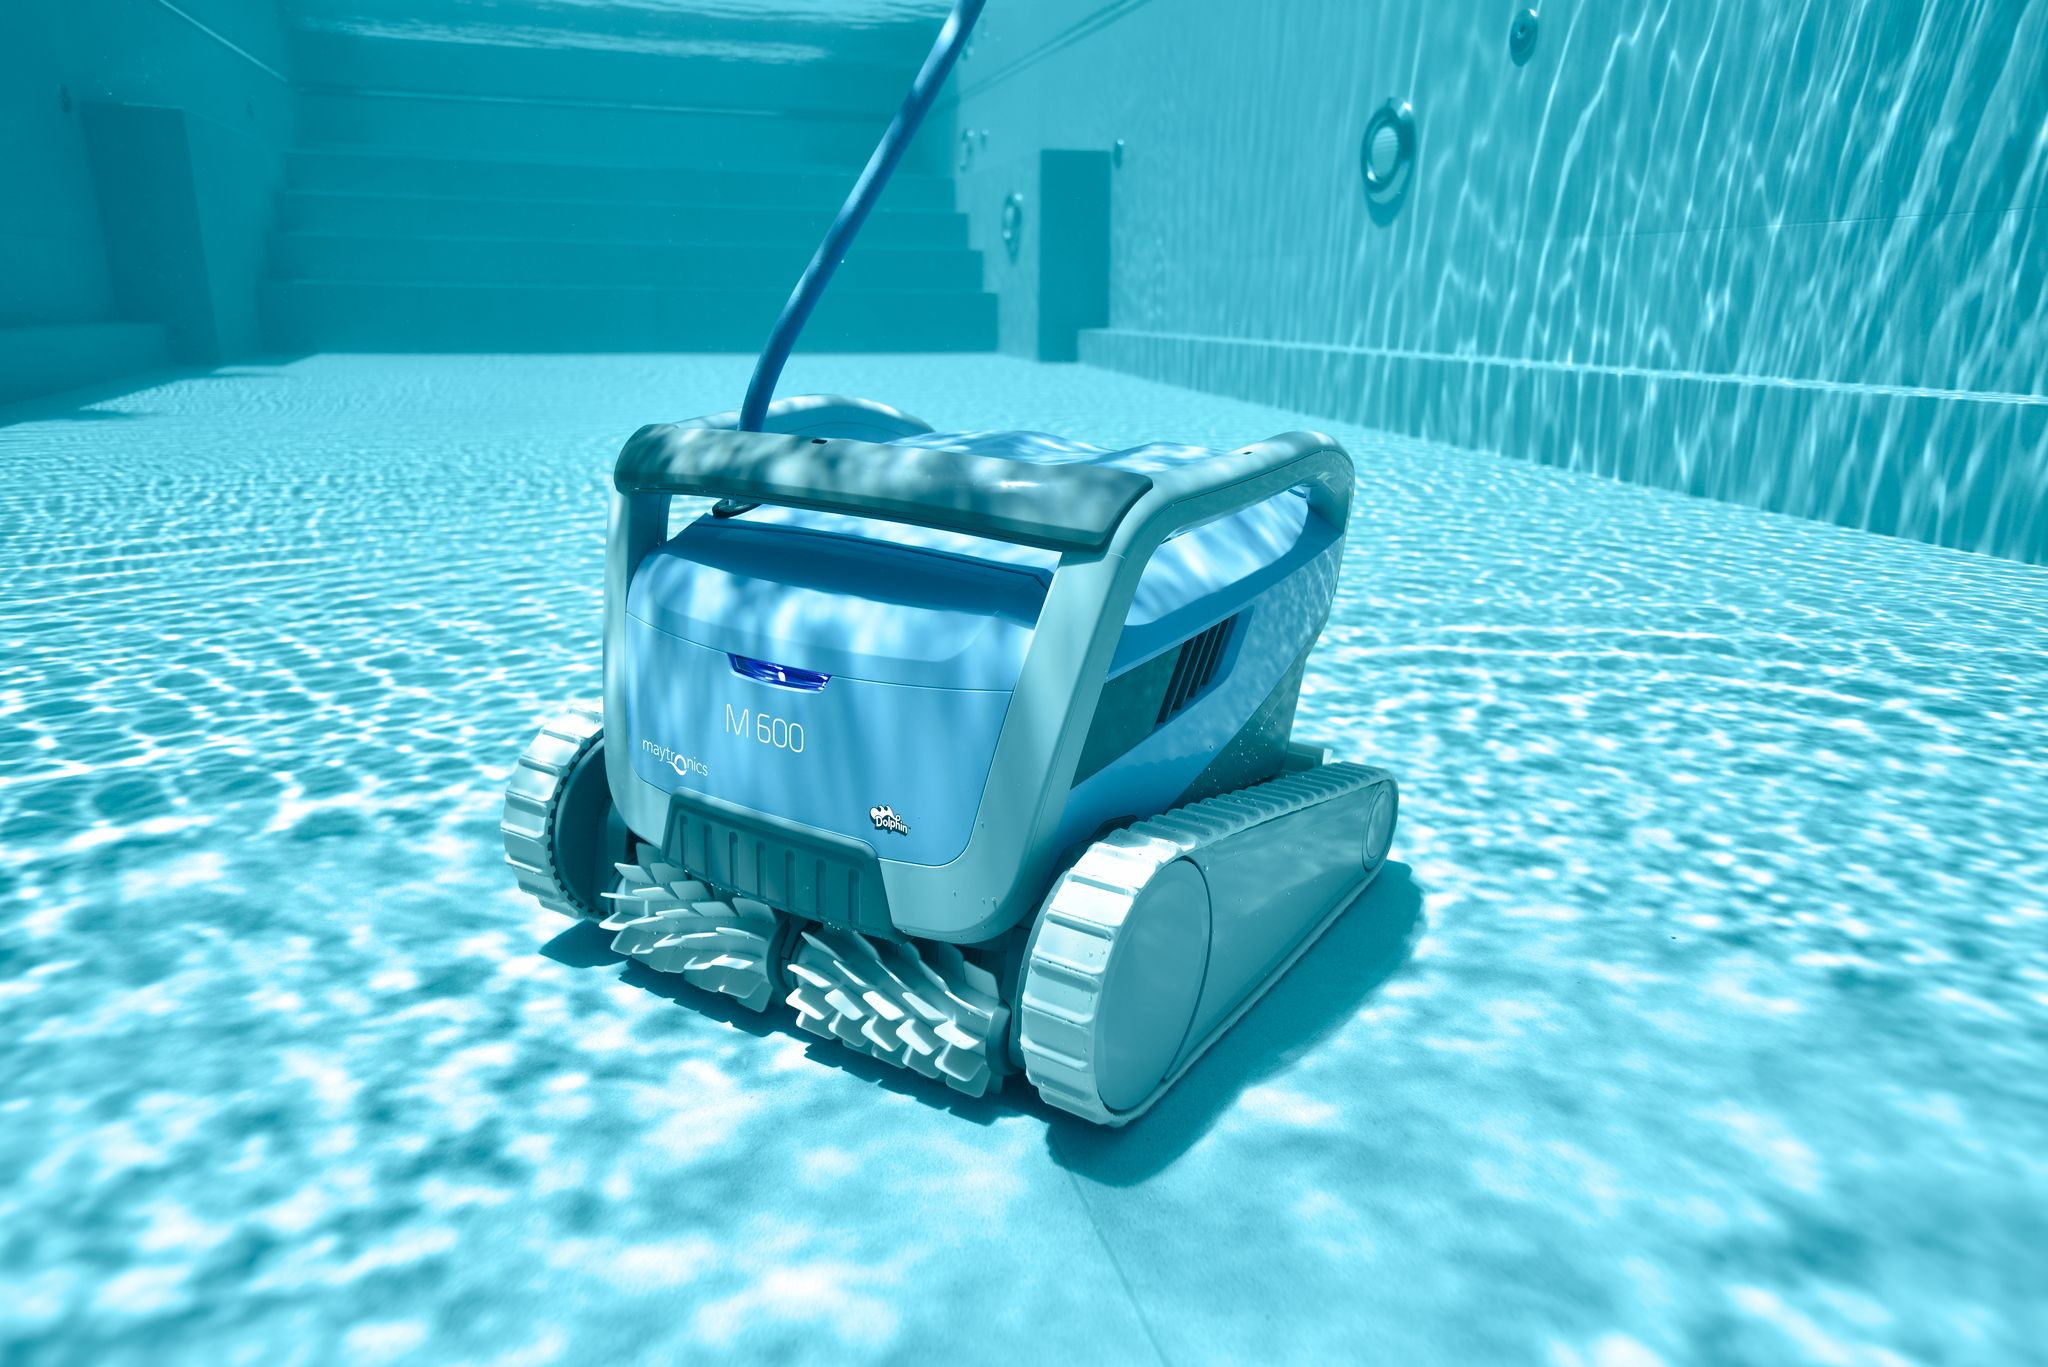 Robot nettoyeur piscine Dolphin S50 - La Boutique Desjoyaux